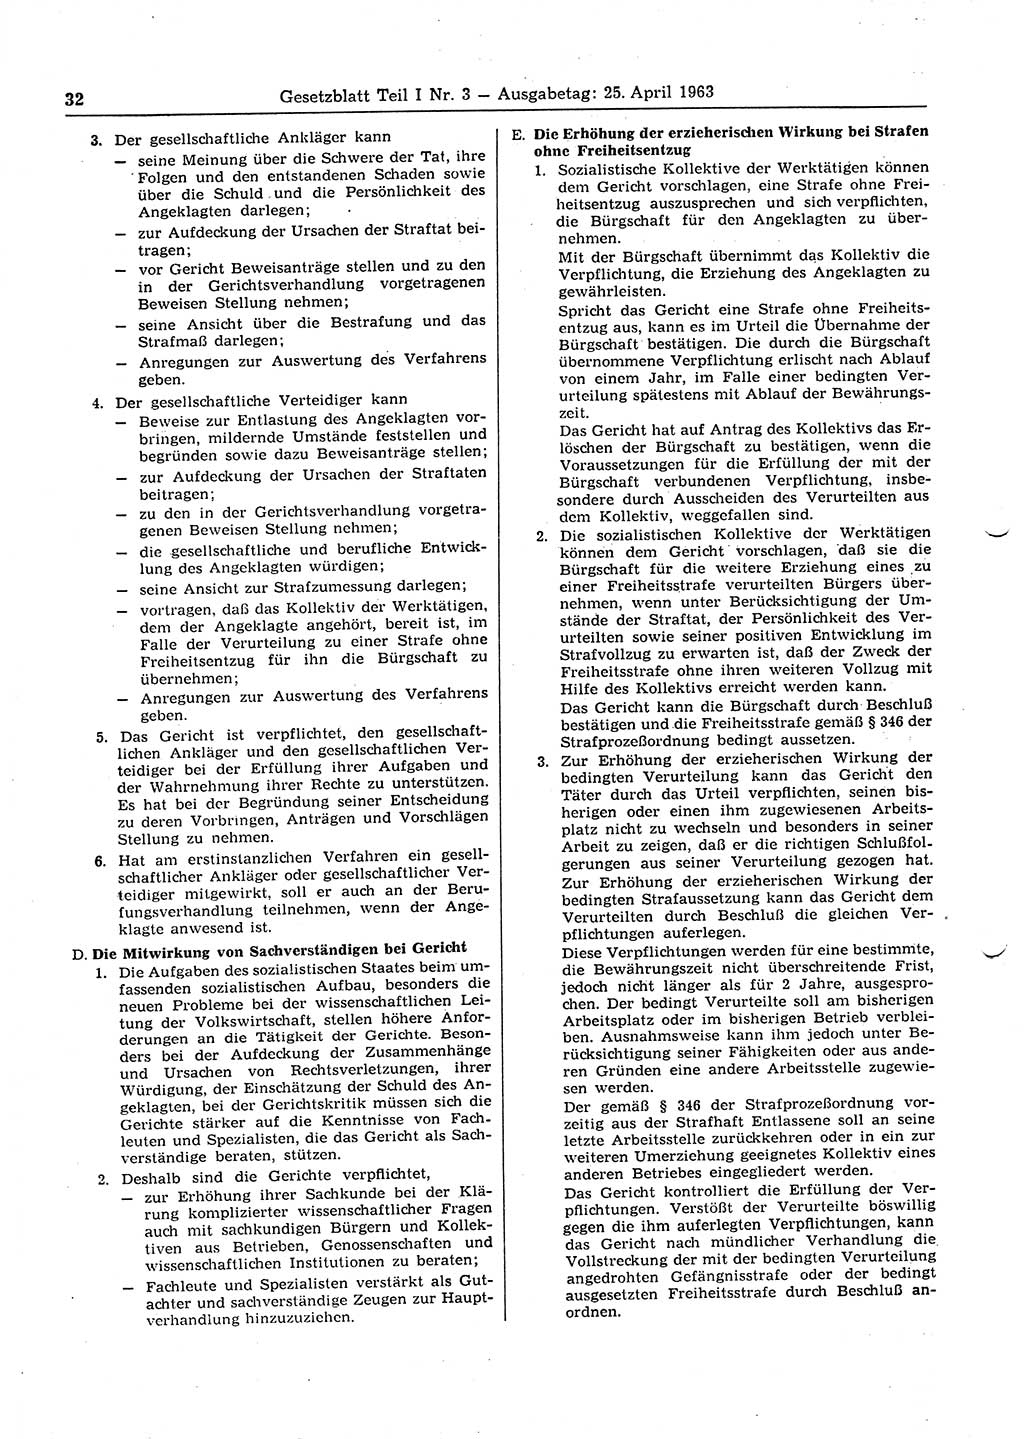 Gesetzblatt (GBl.) der Deutschen Demokratischen Republik (DDR) Teil Ⅰ 1963, Seite 32 (GBl. DDR Ⅰ 1963, S. 32)